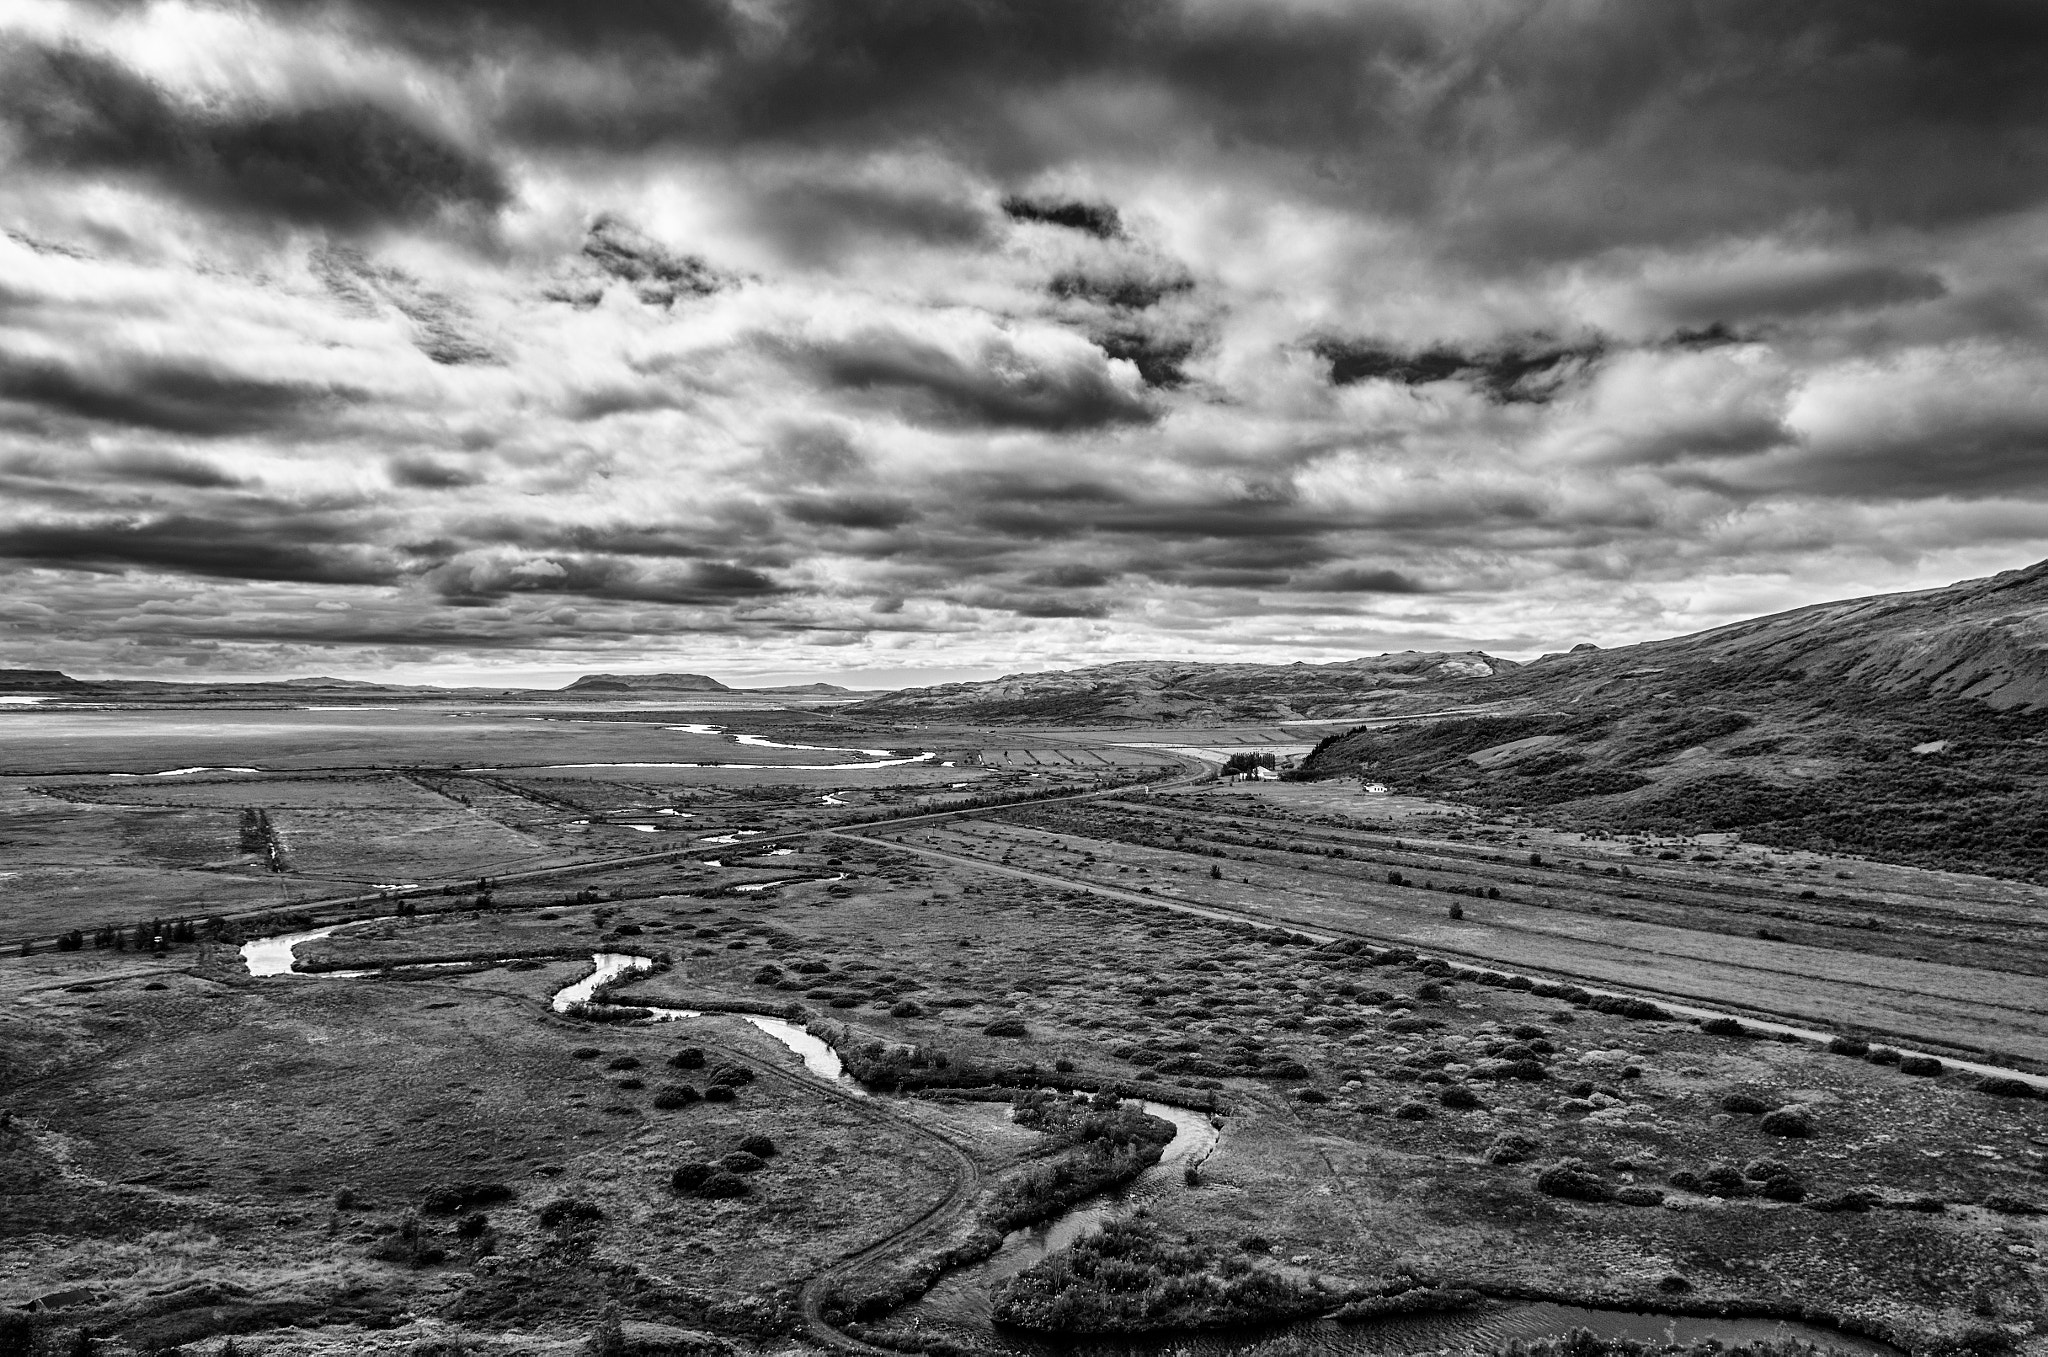 Nikon D5100 + Nikon AF-S DX Nikkor 17-55mm F2.8G ED-IF sample photo. Iceland landscape photography